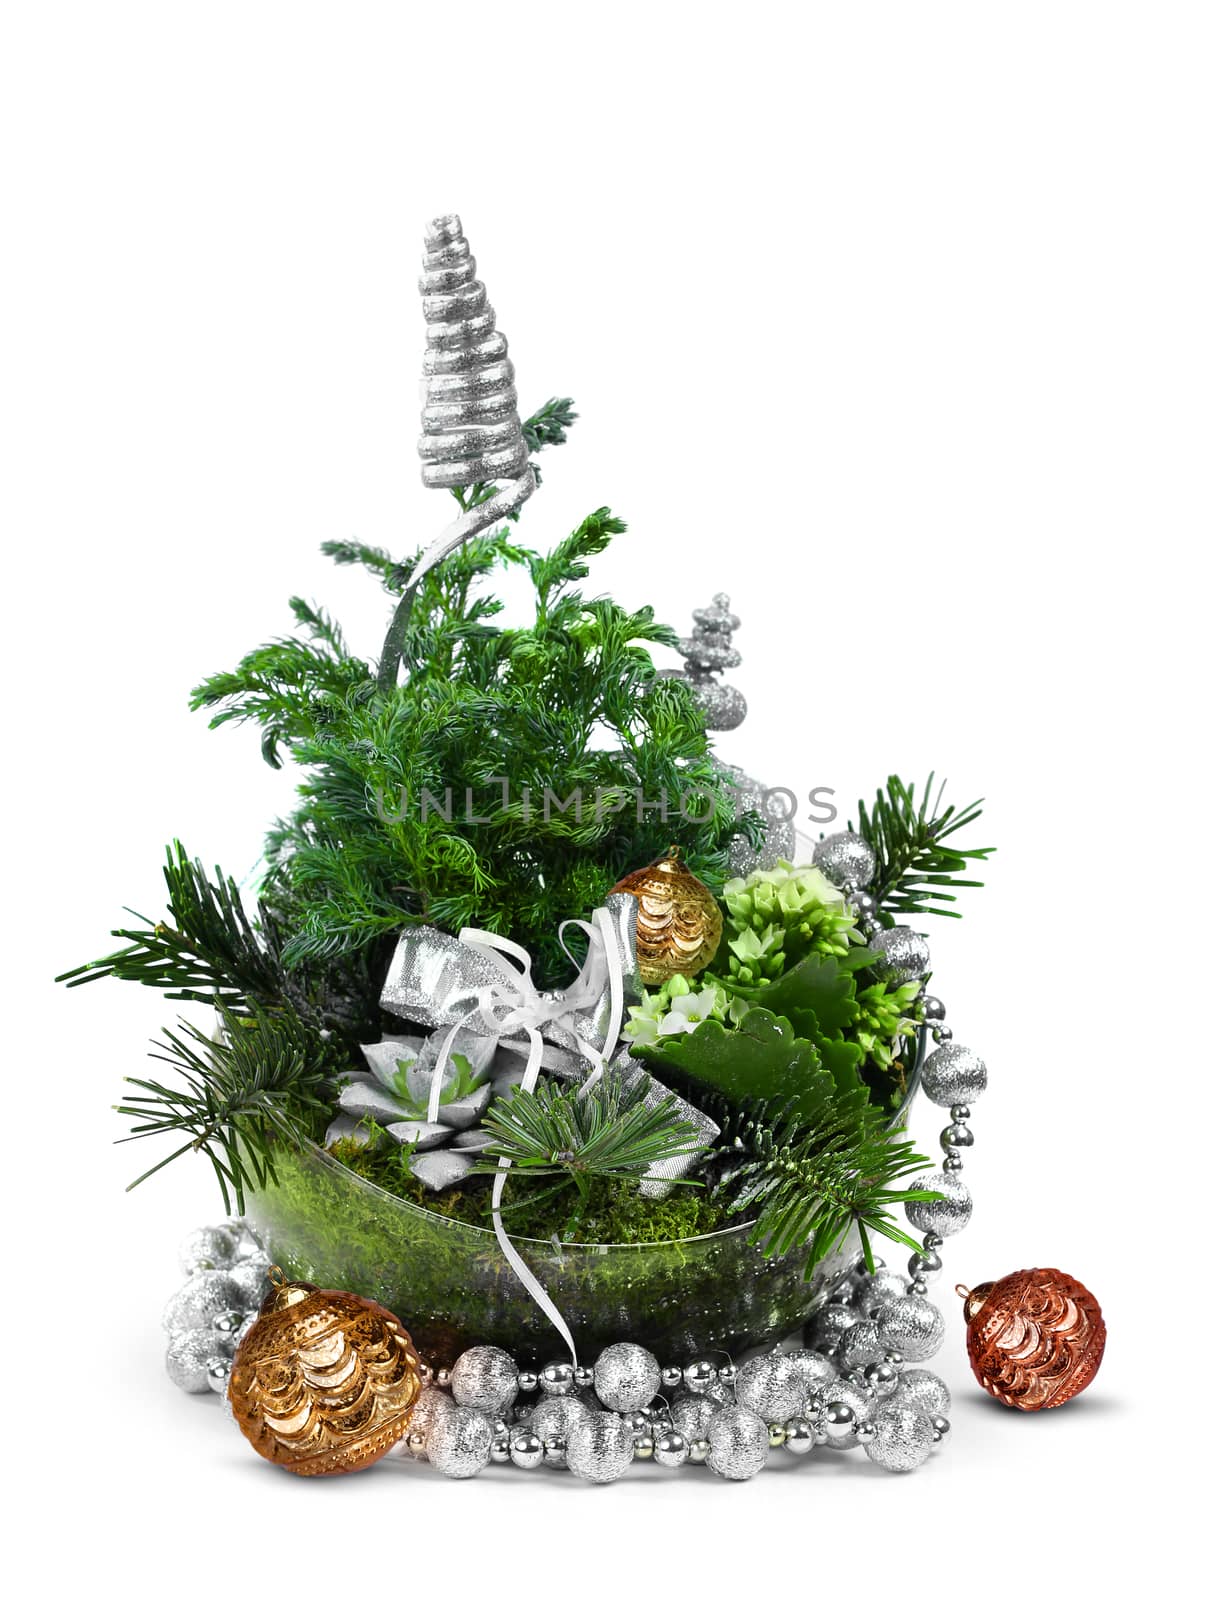 Modern Christmas decoration arrangement by anterovium